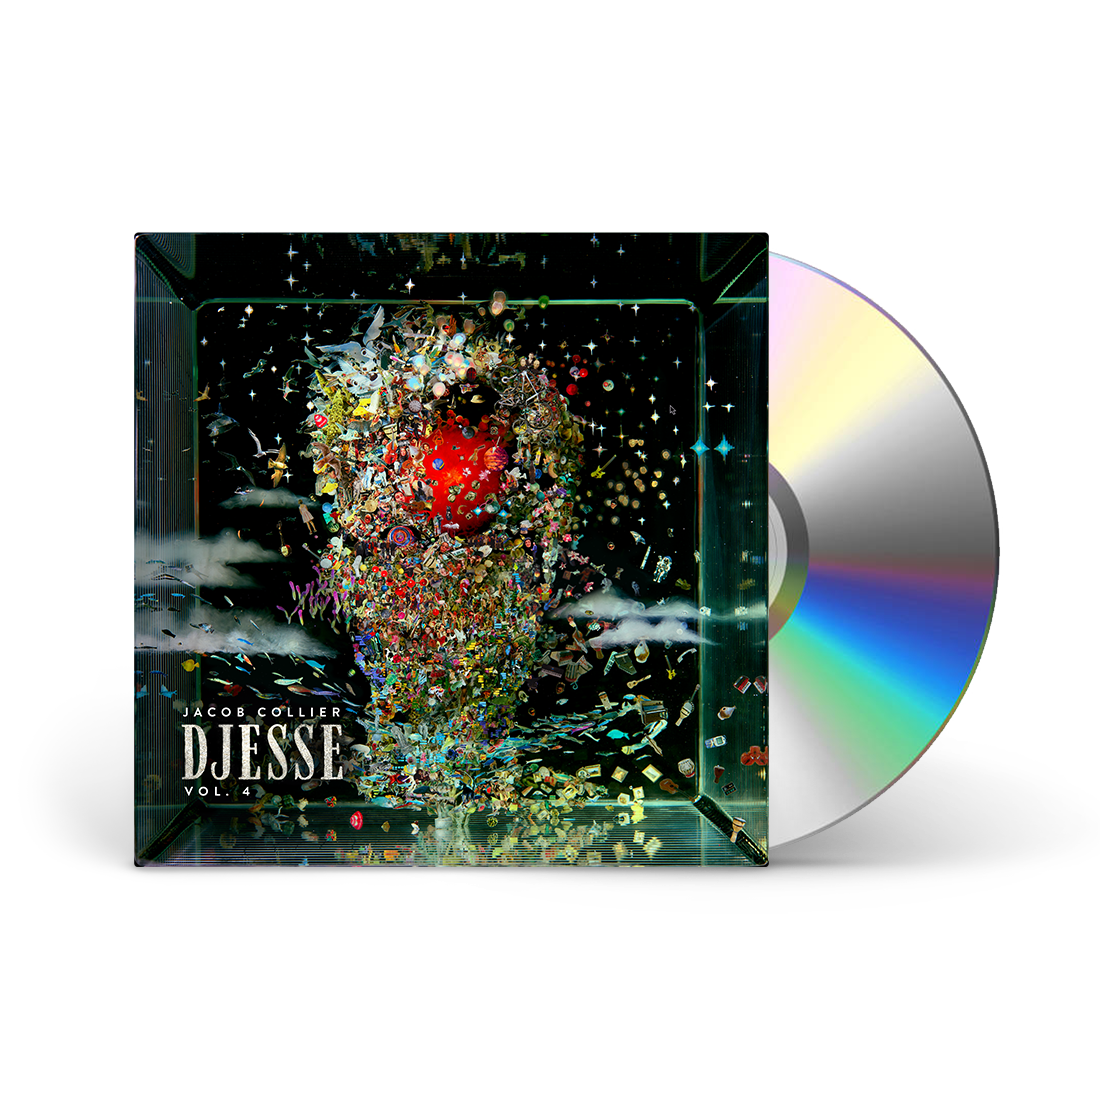 Djesse Vol. 4 CD